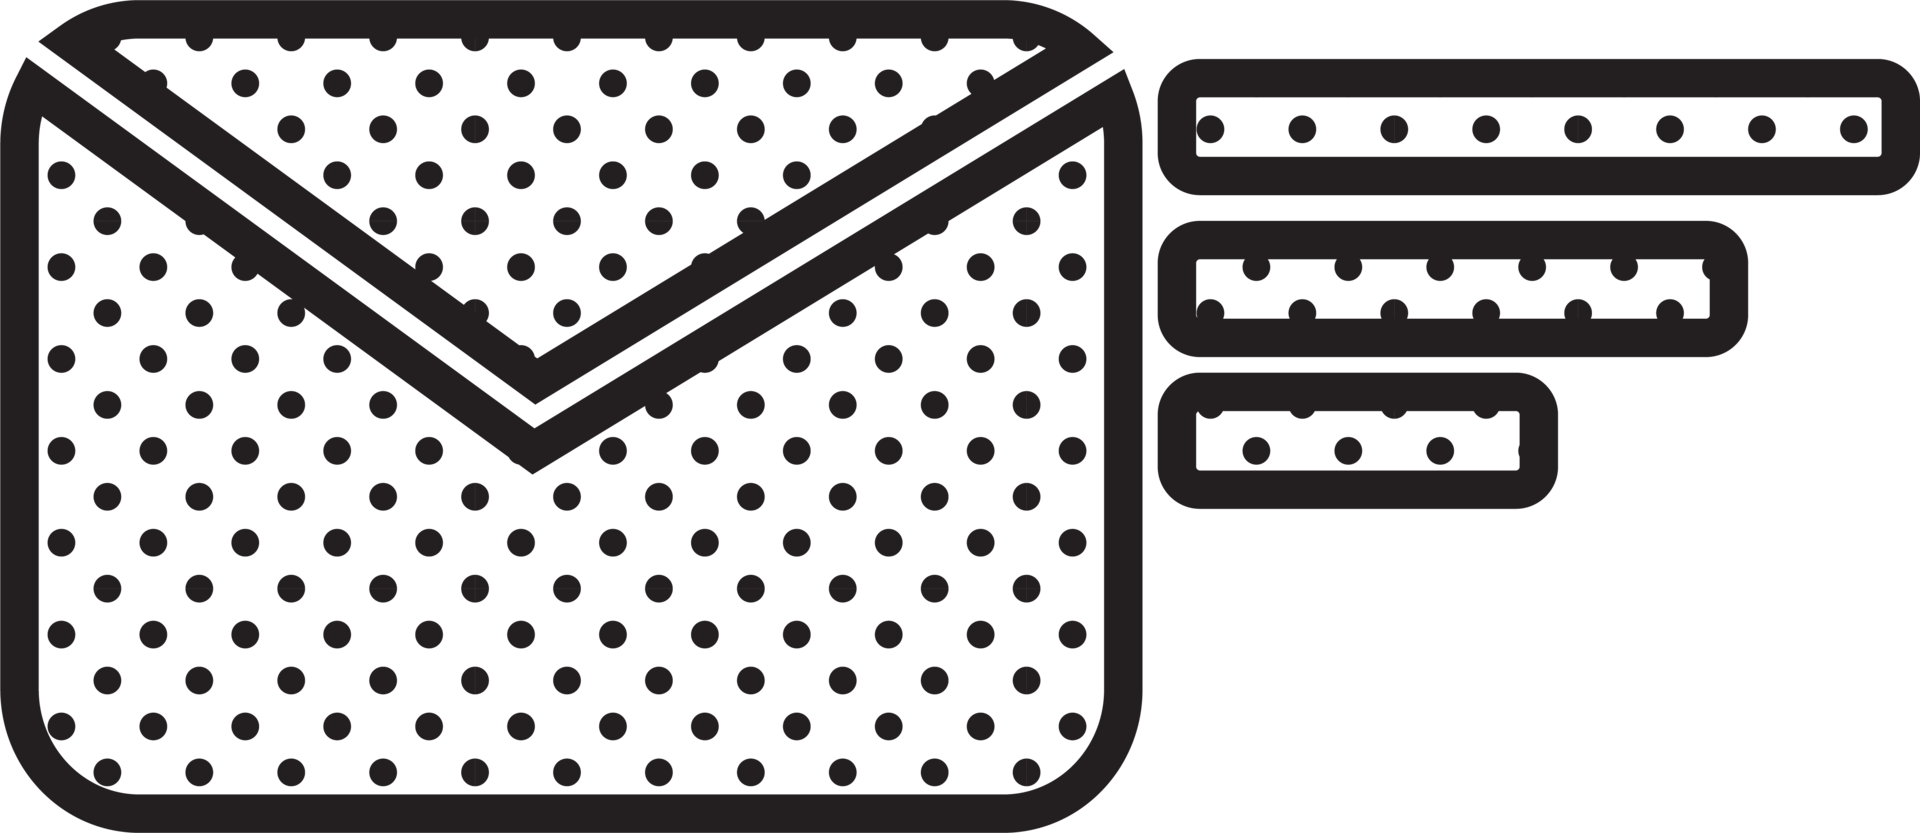 design de símbolo de sinal de ícone de e-mail e correio png